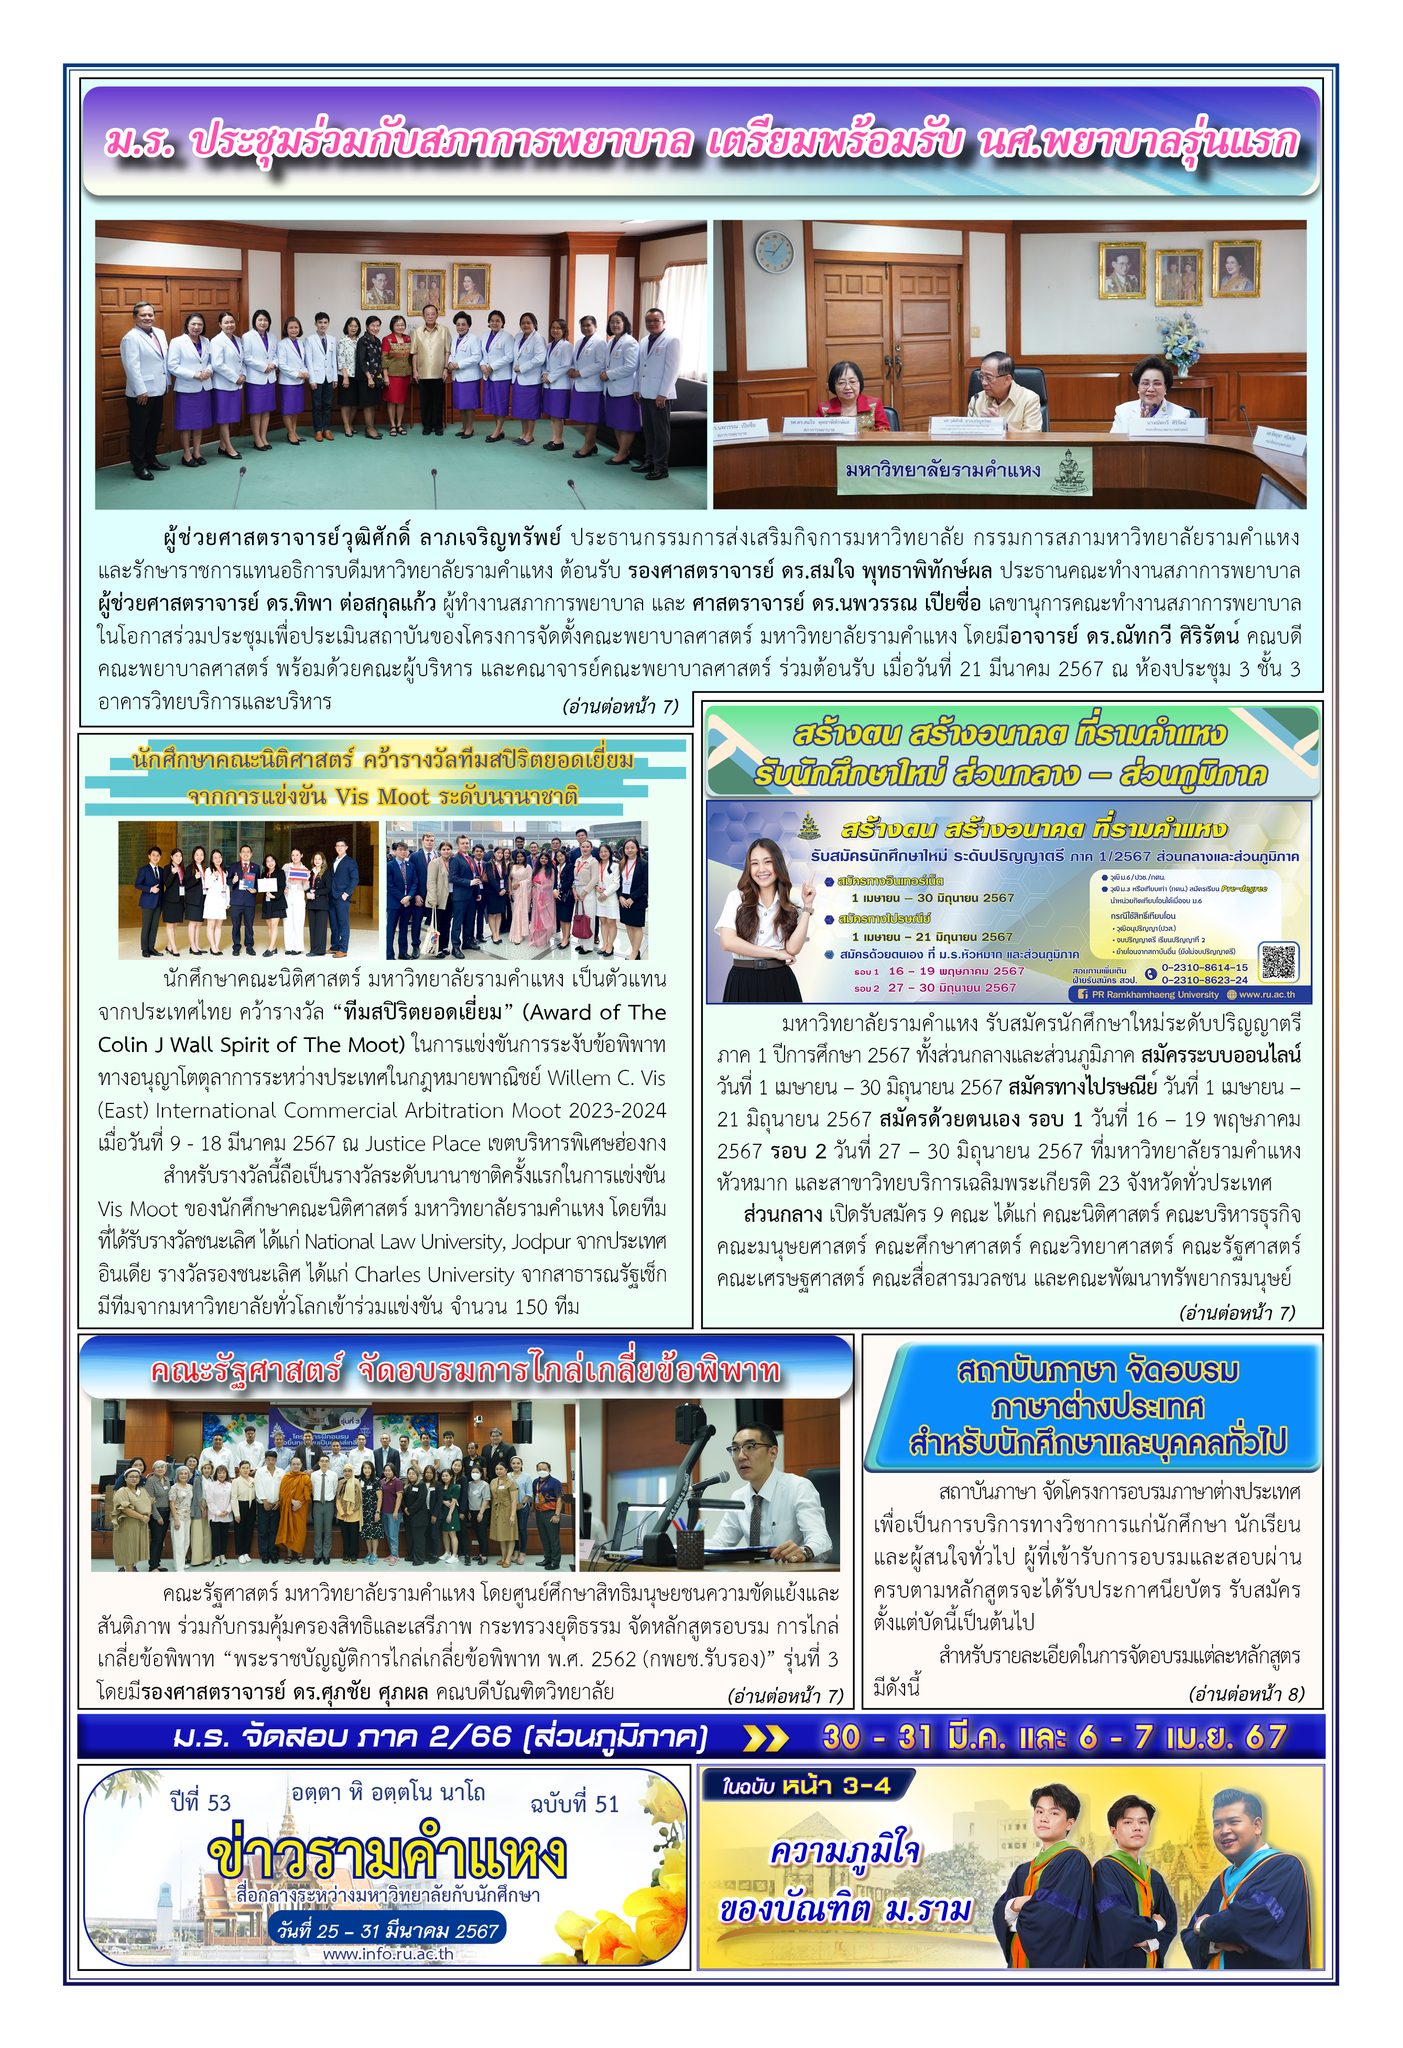 ข่าวรามคำแหง ปีที่ 53 ฉบับที่ 51 วันที่ 25-31 มีนาคม 2567 / Ramkhamhaeng News. Year 53, Issue 51, 25-31 March 2024